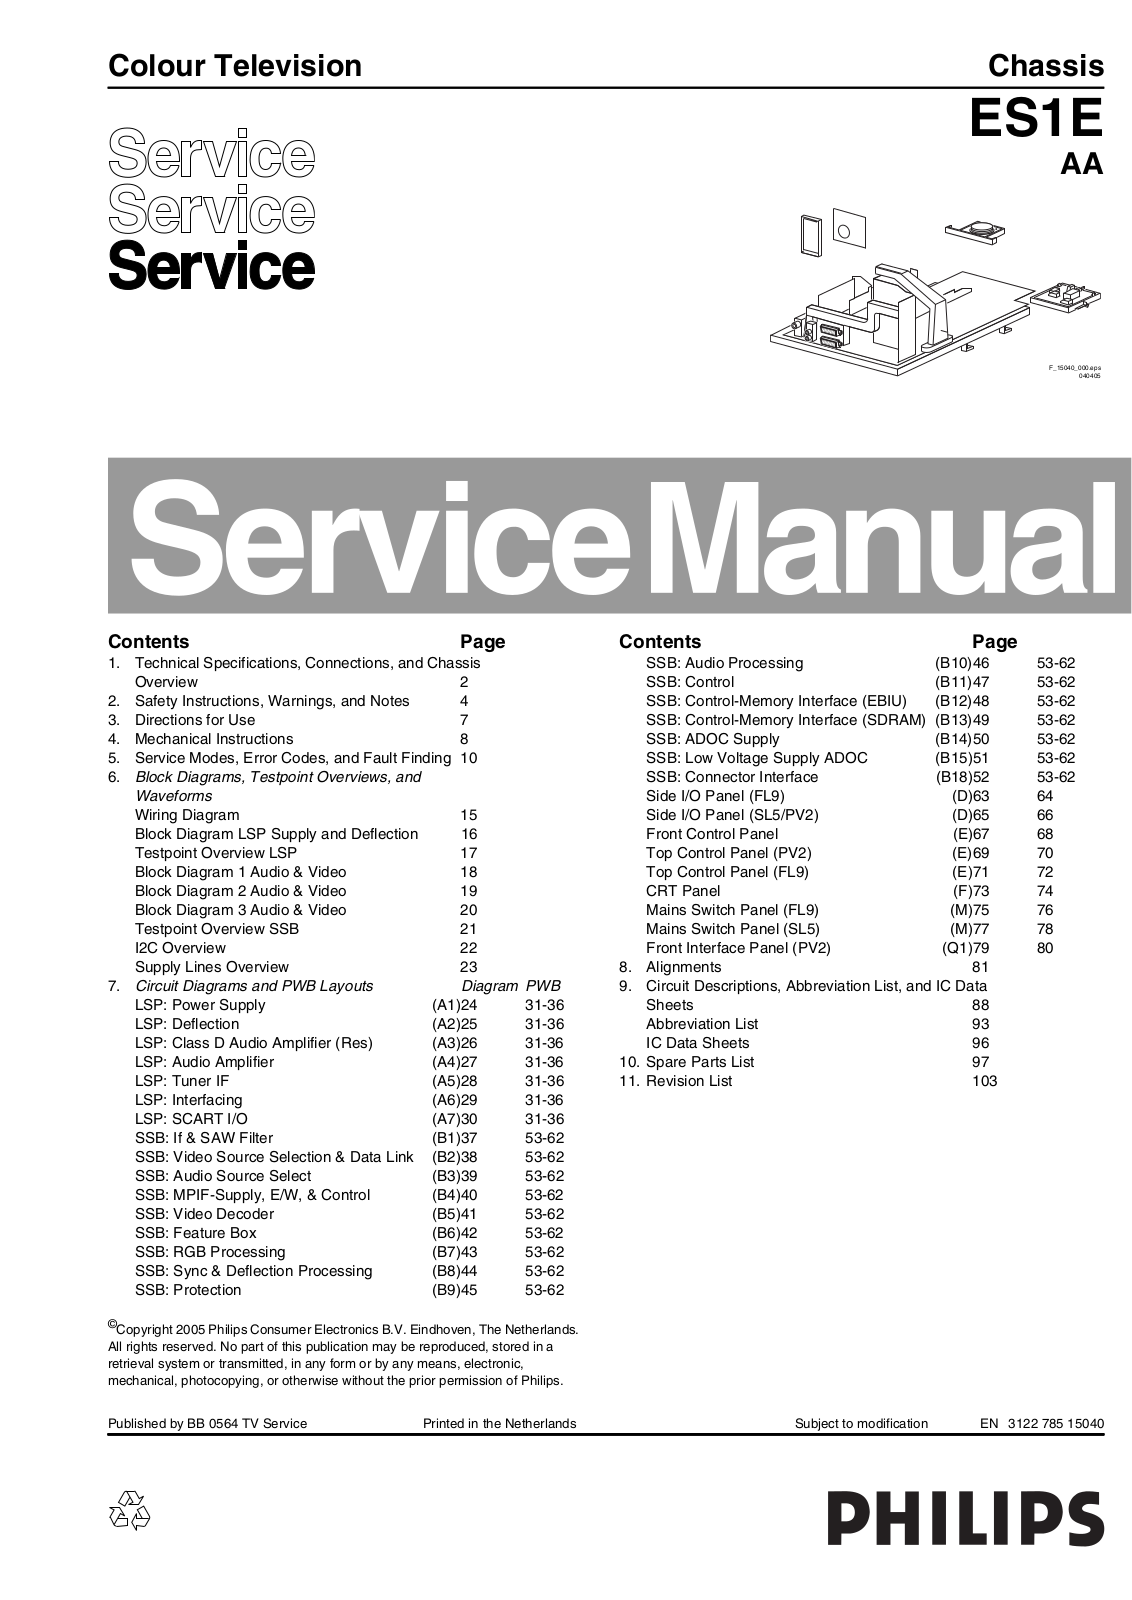 PHILIPS ES1E AA Service Manual